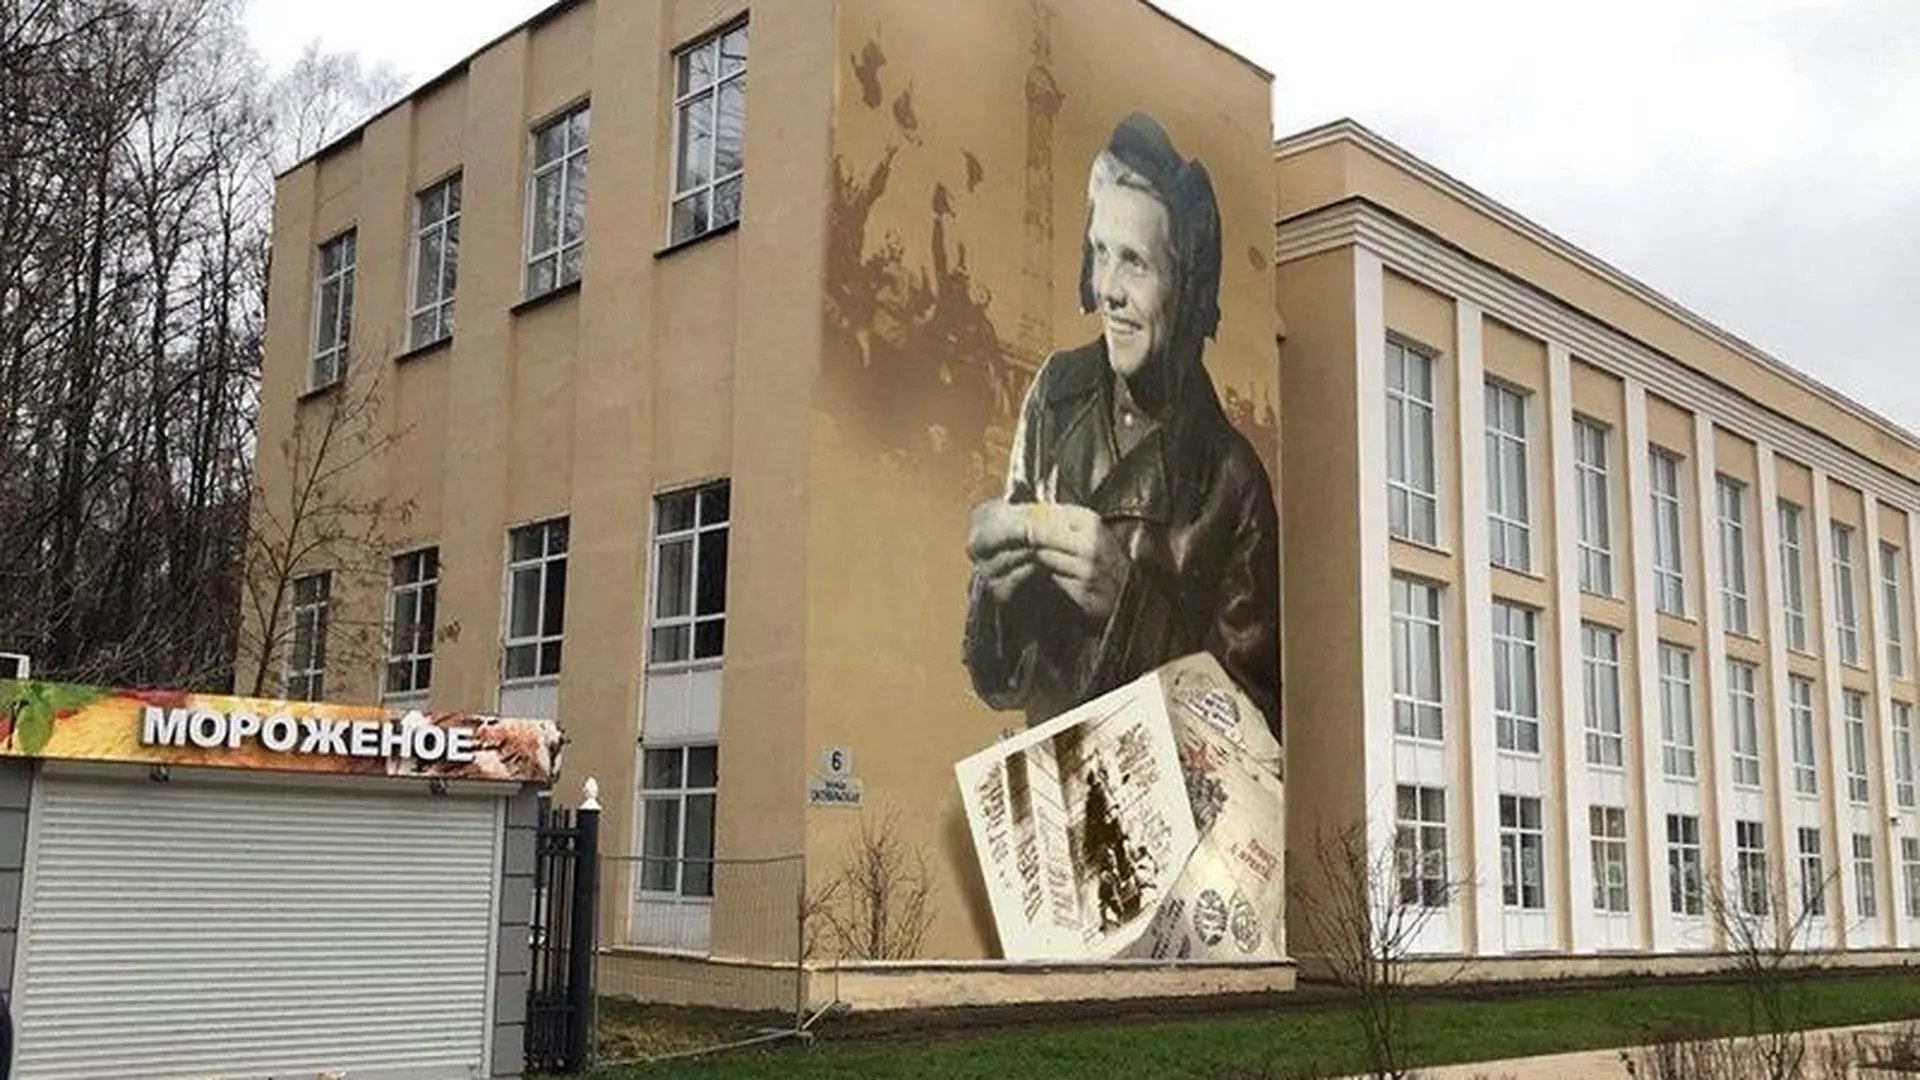 Внук увековечит память своего деда в виде граффити-портрета к юбилею Победы